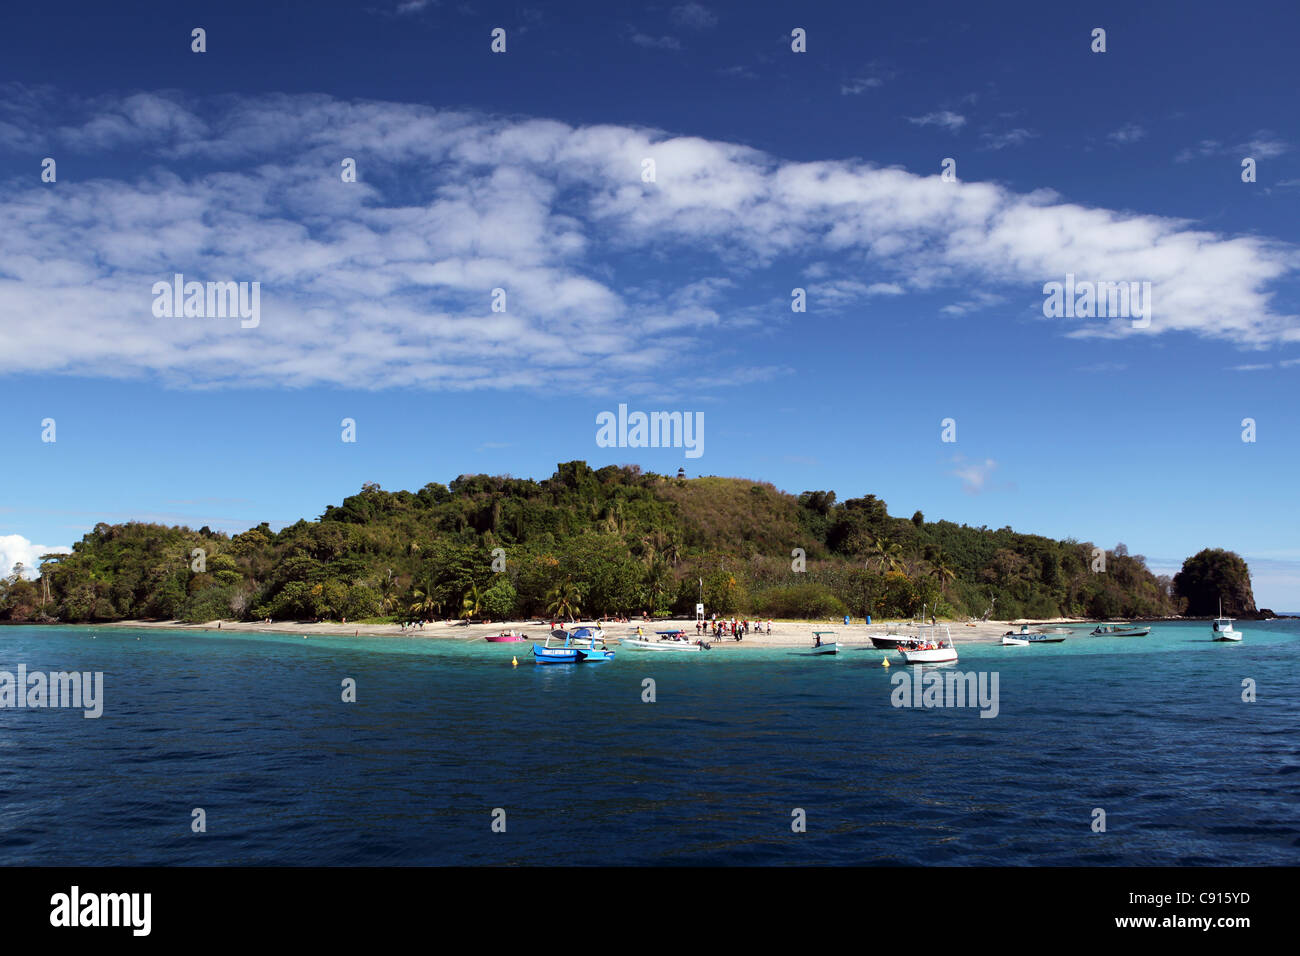 Das Schnorcheln und Tauchen Tropenparadies Tany Kely Insel, in der Nähe von Nosy Be, mit Booten über Türkis klarem Wasser verankert. Stockfoto